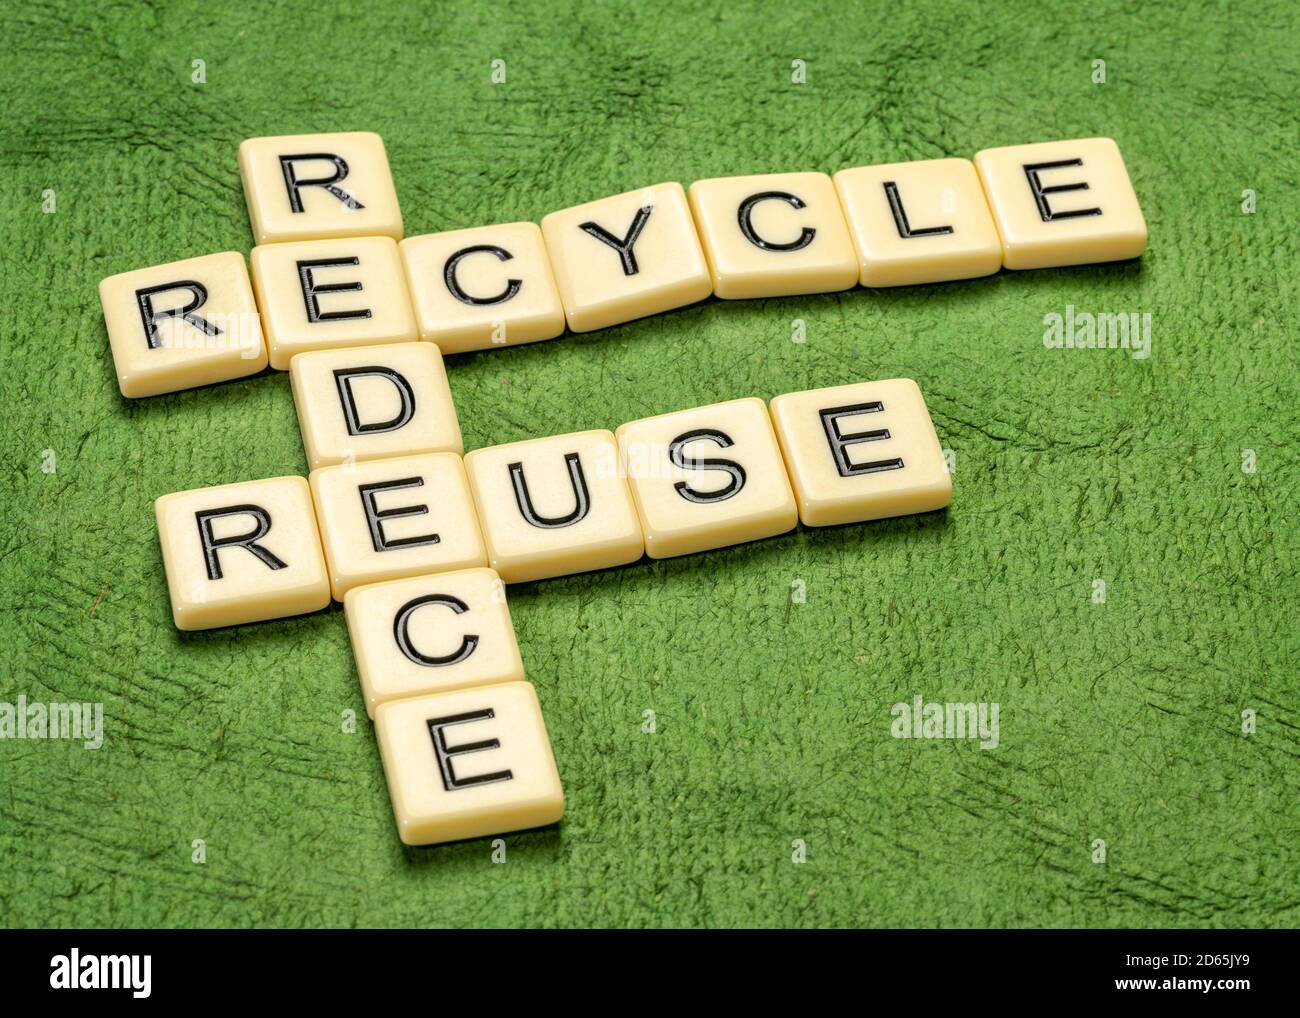 réduire, réutiliser et recycler les mots croisés en lettres ivoire contre le papier texturé vert, la préservation de l'environnement et le concept de durabilité Banque D'Images